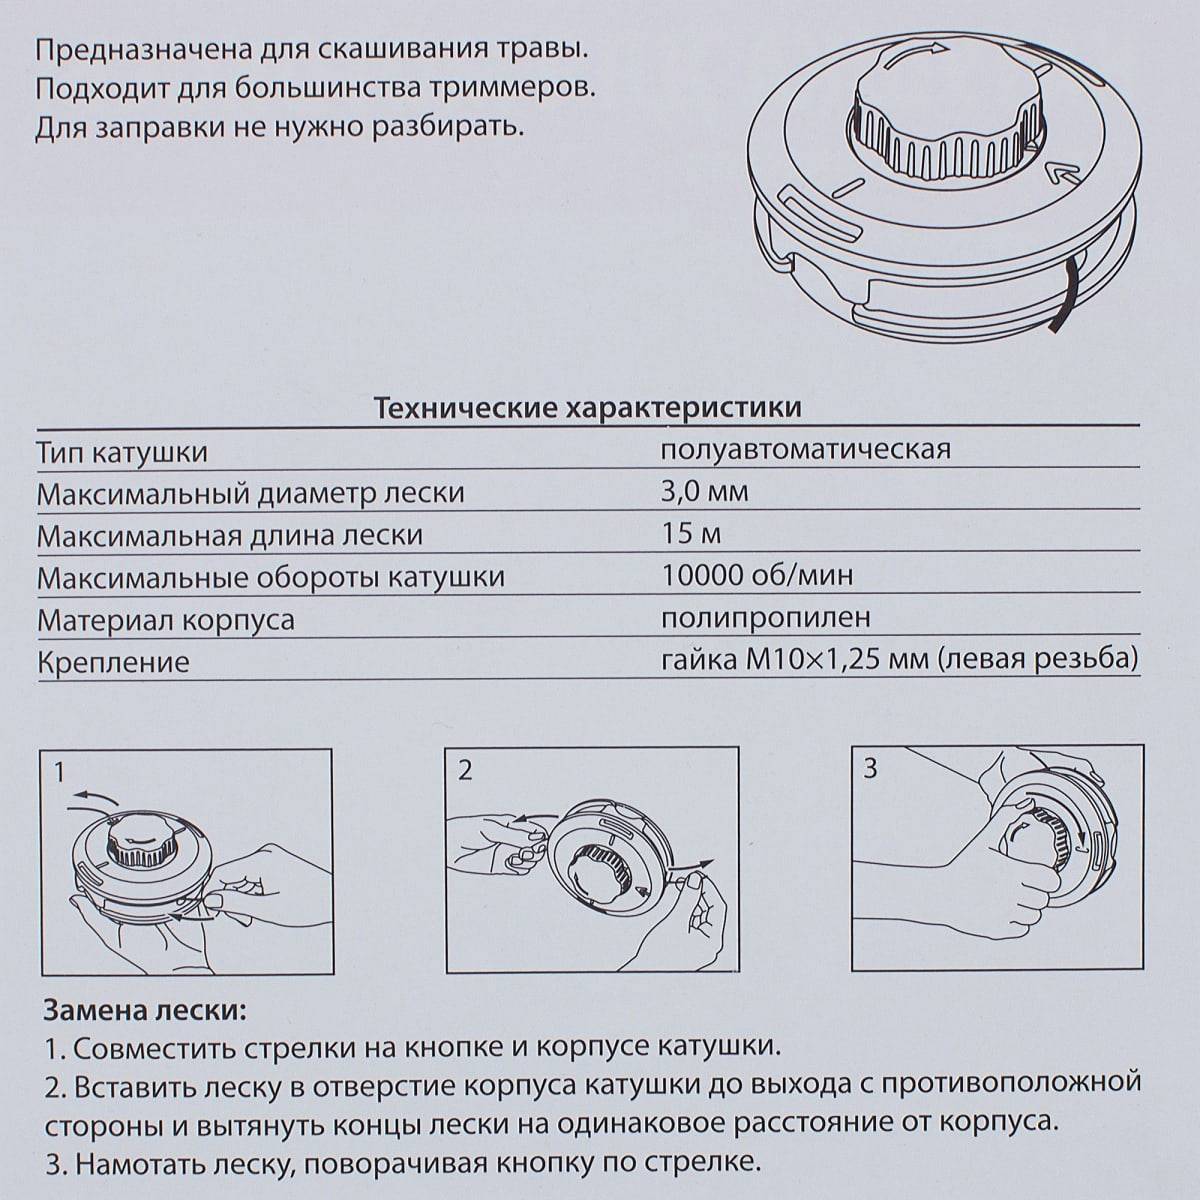 Как намотать леску на катушку электротриммера • evdiral.ru